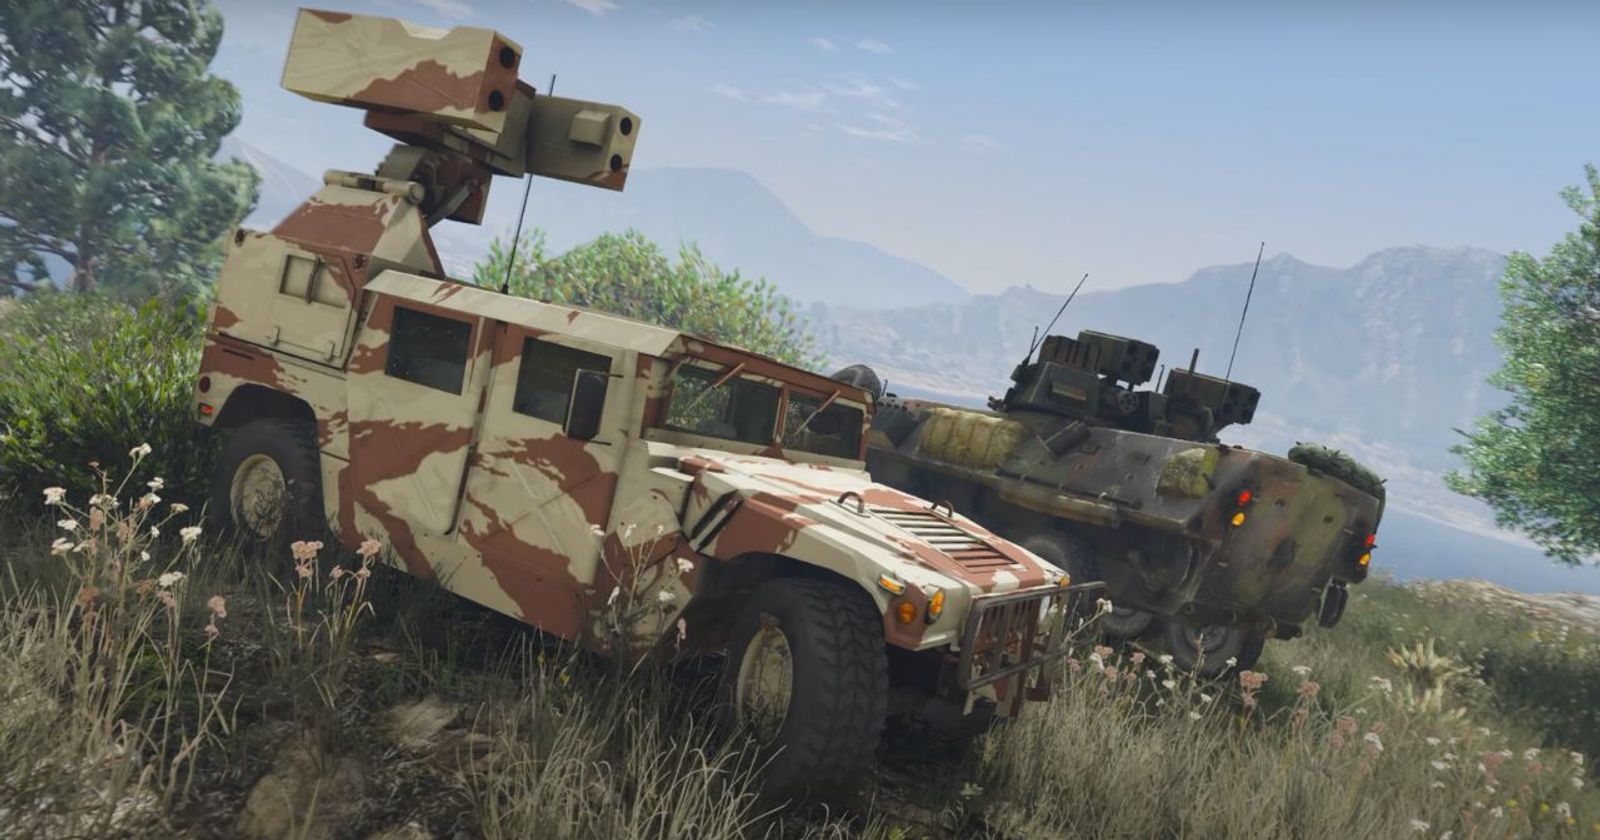 All new vehicles in GTA Online: Los Santos Mercenaries update